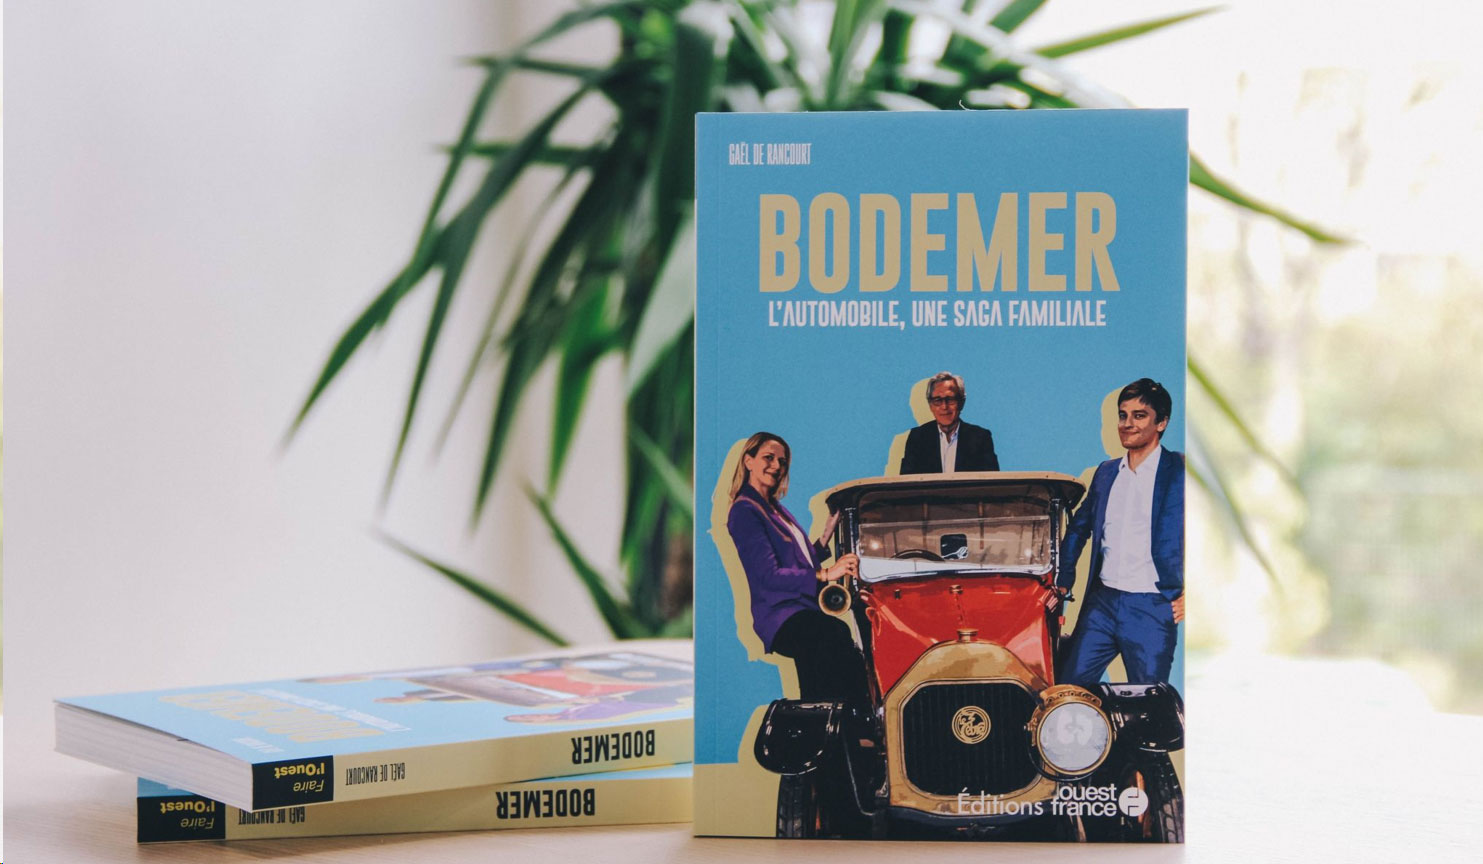 Livre Bodemer, une saga familiale, ed. Ouest France